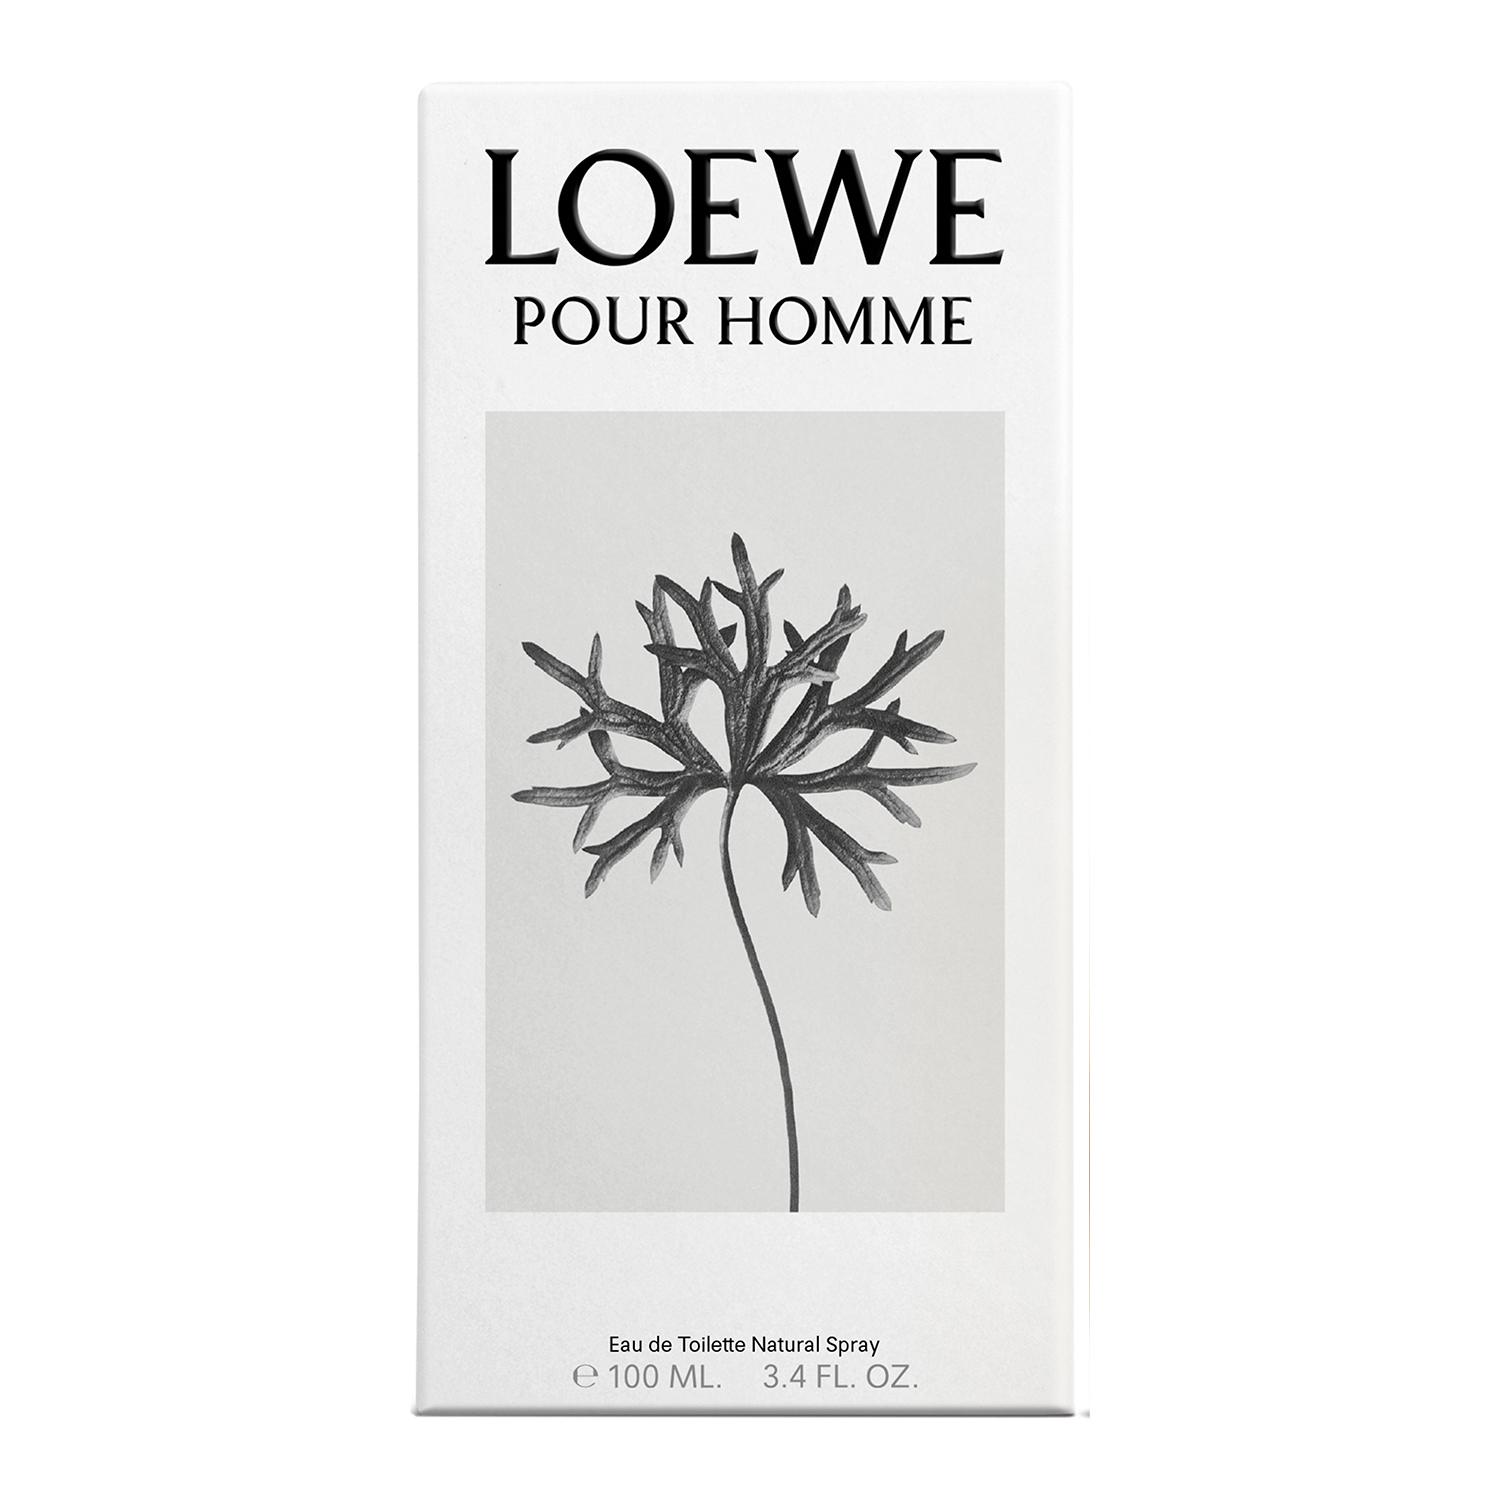 LOEWE POUR HOMME EAU DE TOILETTE